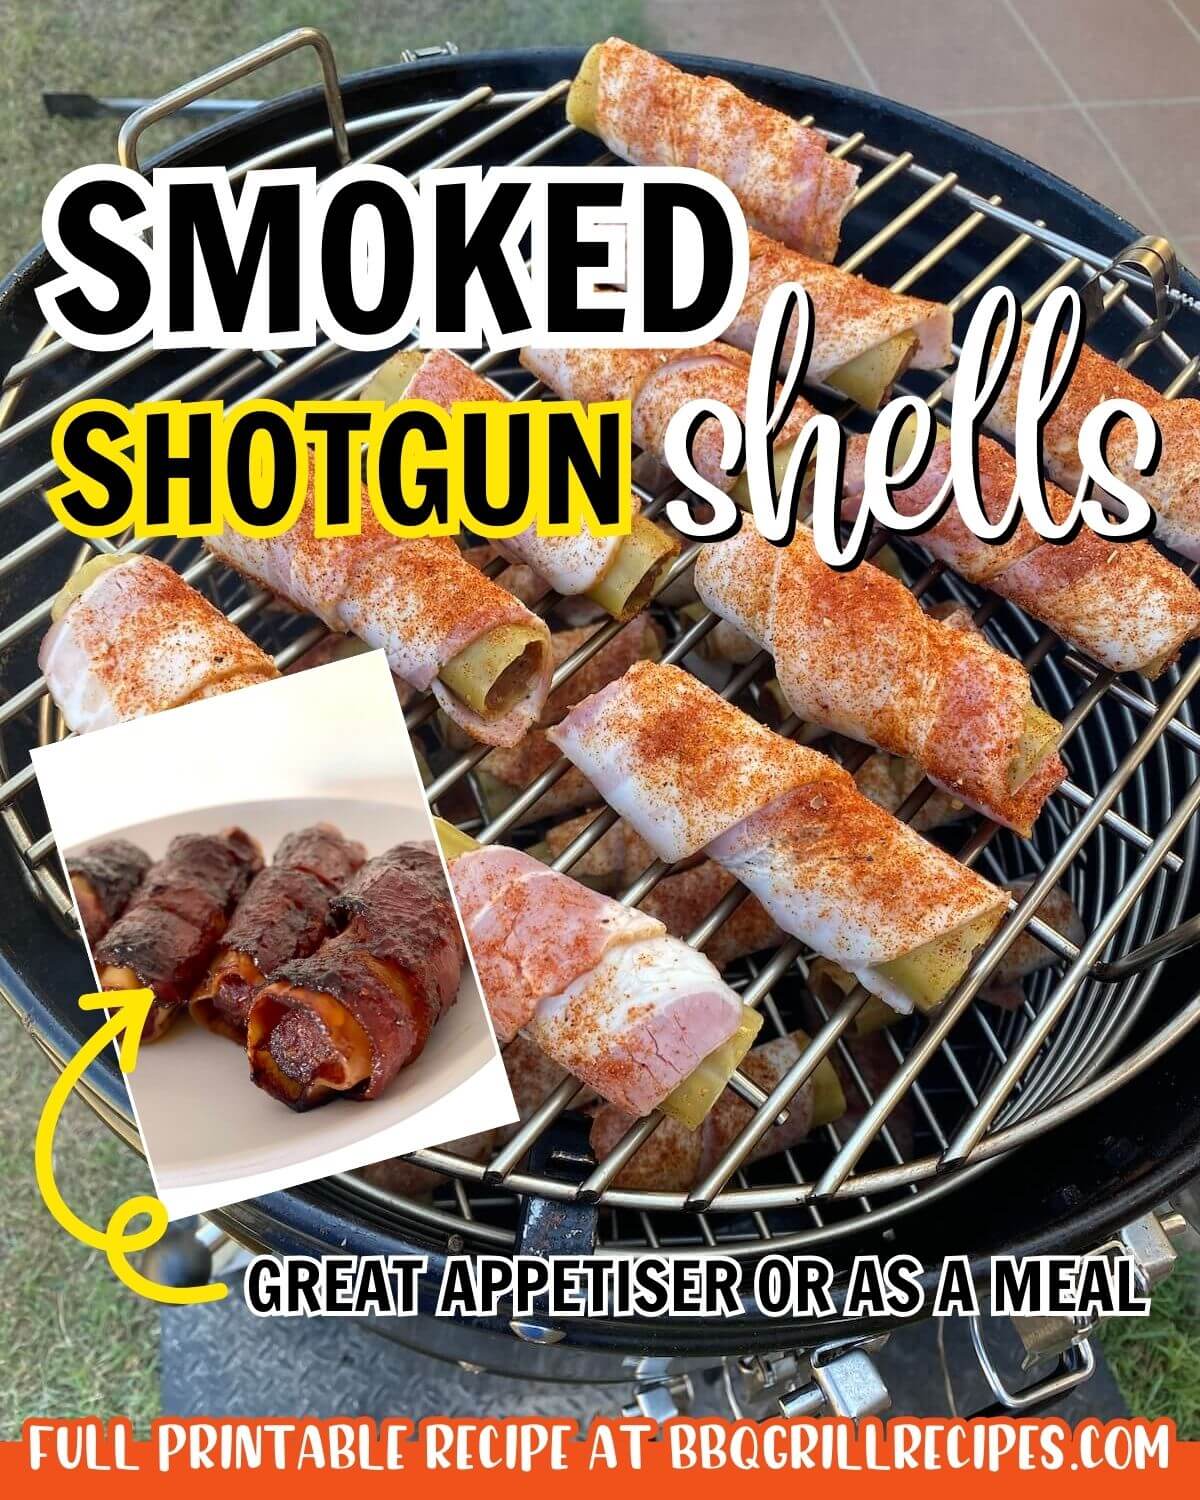 smoked shotgun shells recipe great appetiser or main.